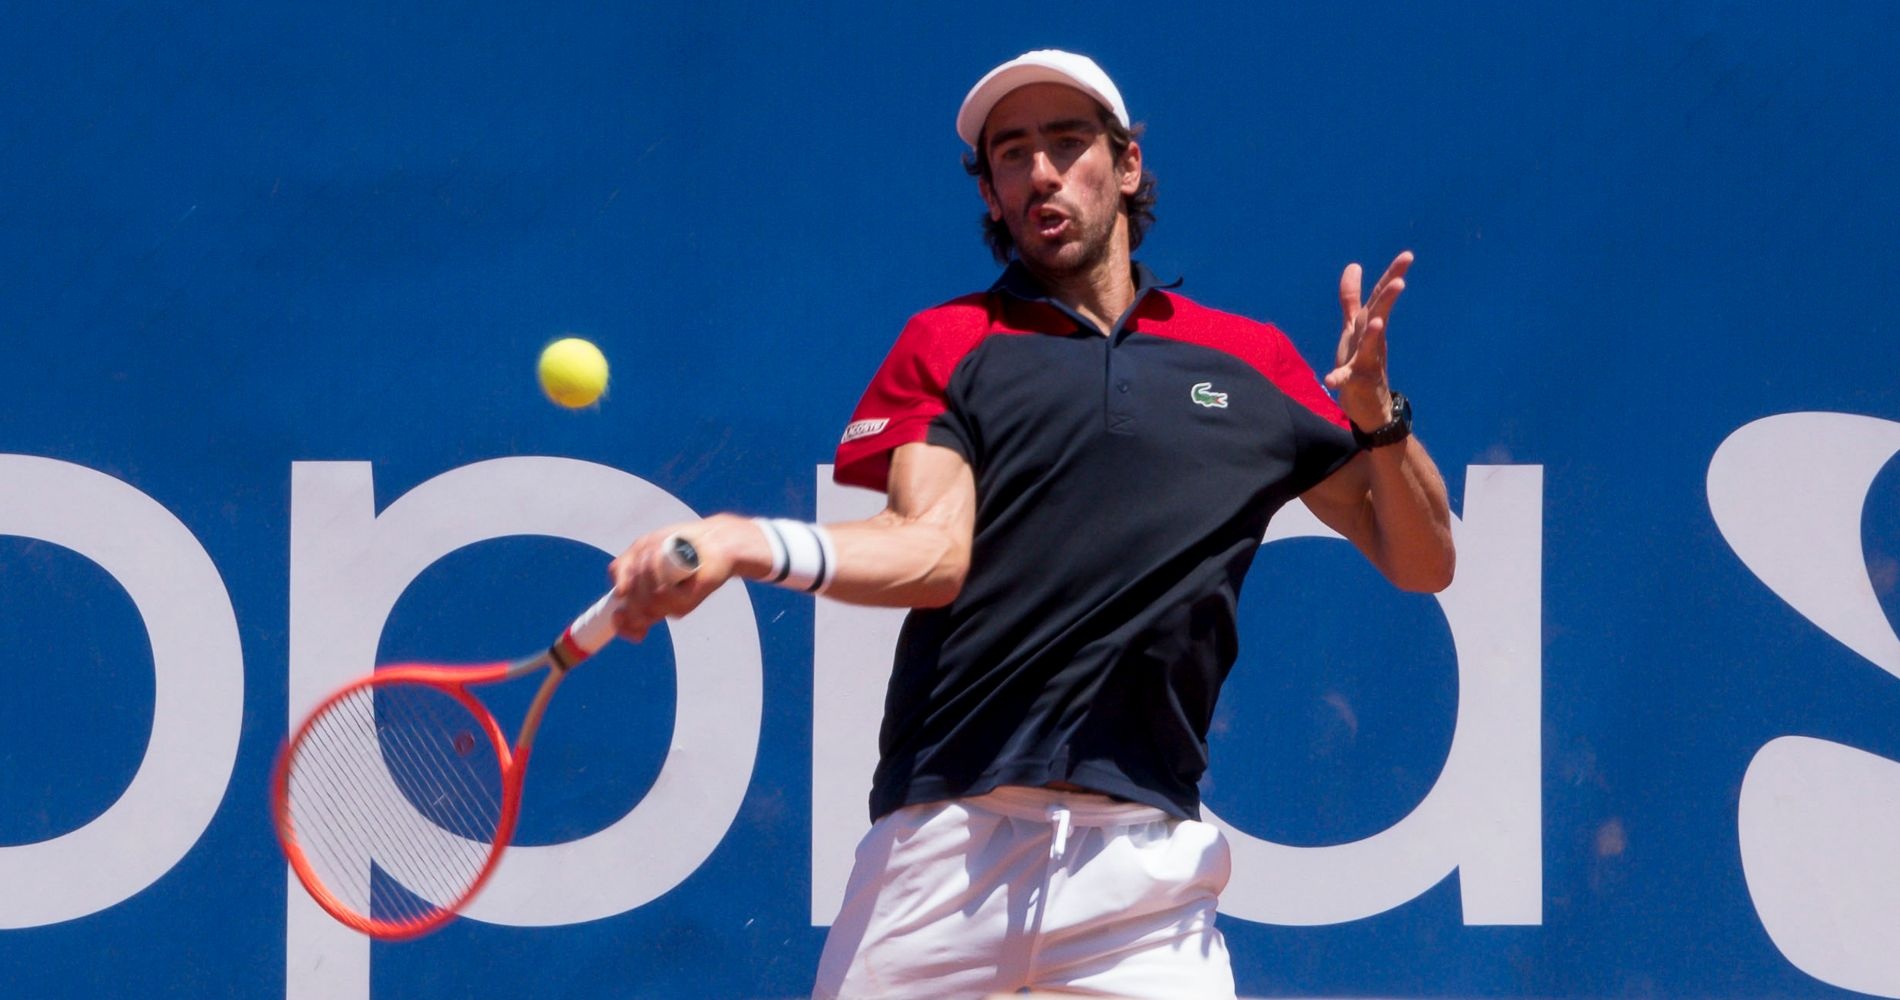 Tennis: Cuevas beats Brooksby in first men’s upset at Roland-Garros